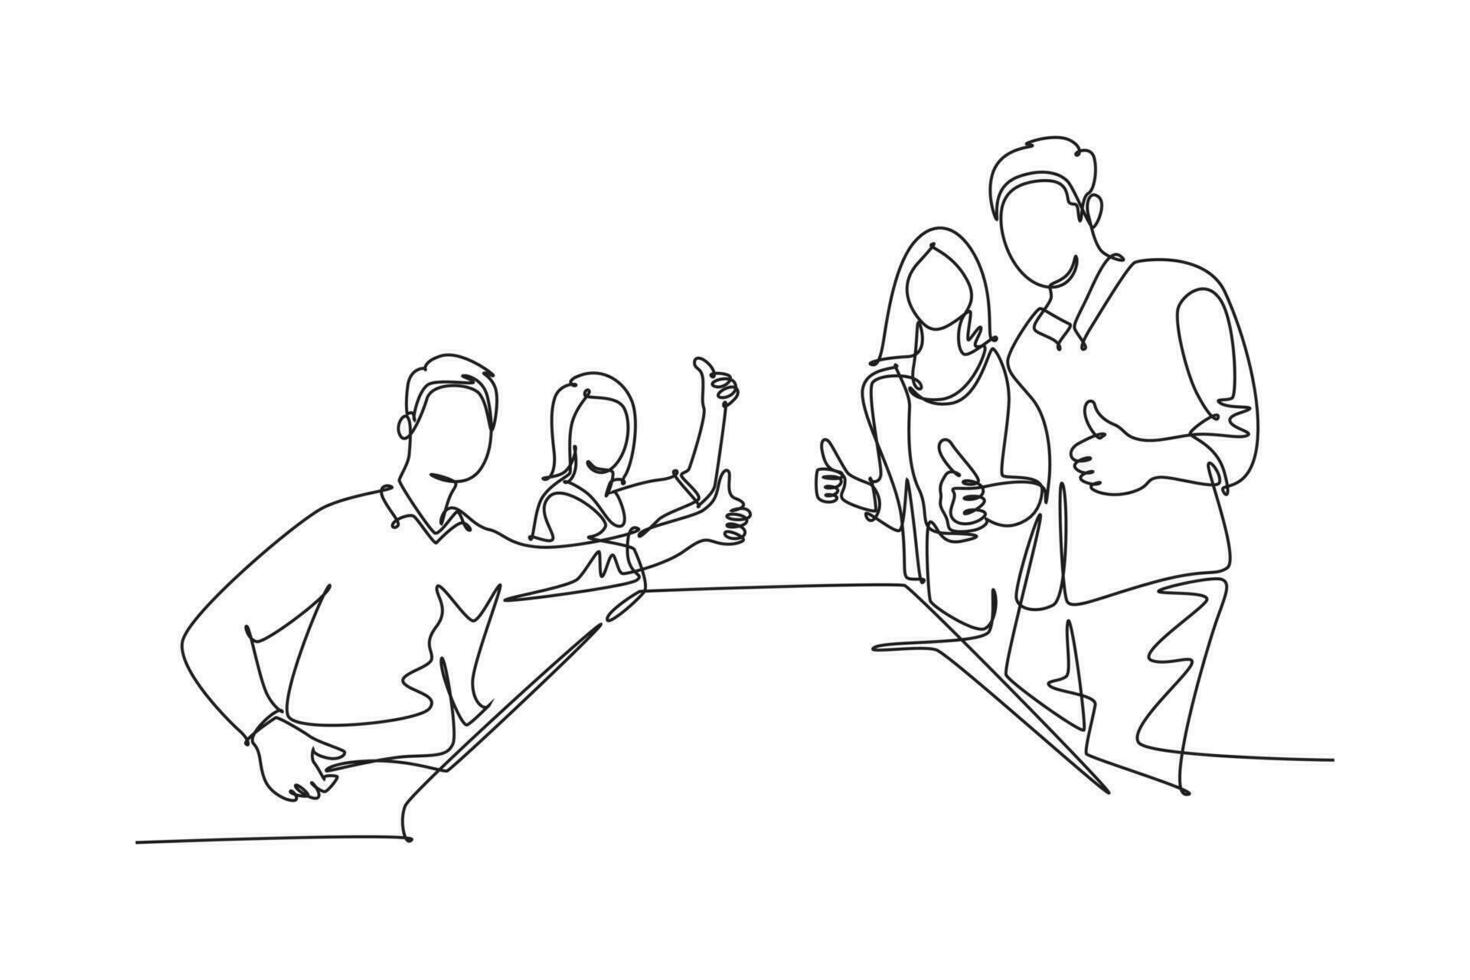 doorlopend een lijn tekening groep van jong gelukkig zakenlieden en onderneemsters geven duimen omhoog gebaar samen. bedrijf vergadering samenwerking. single lijn trek ontwerp vector grafisch illustratie